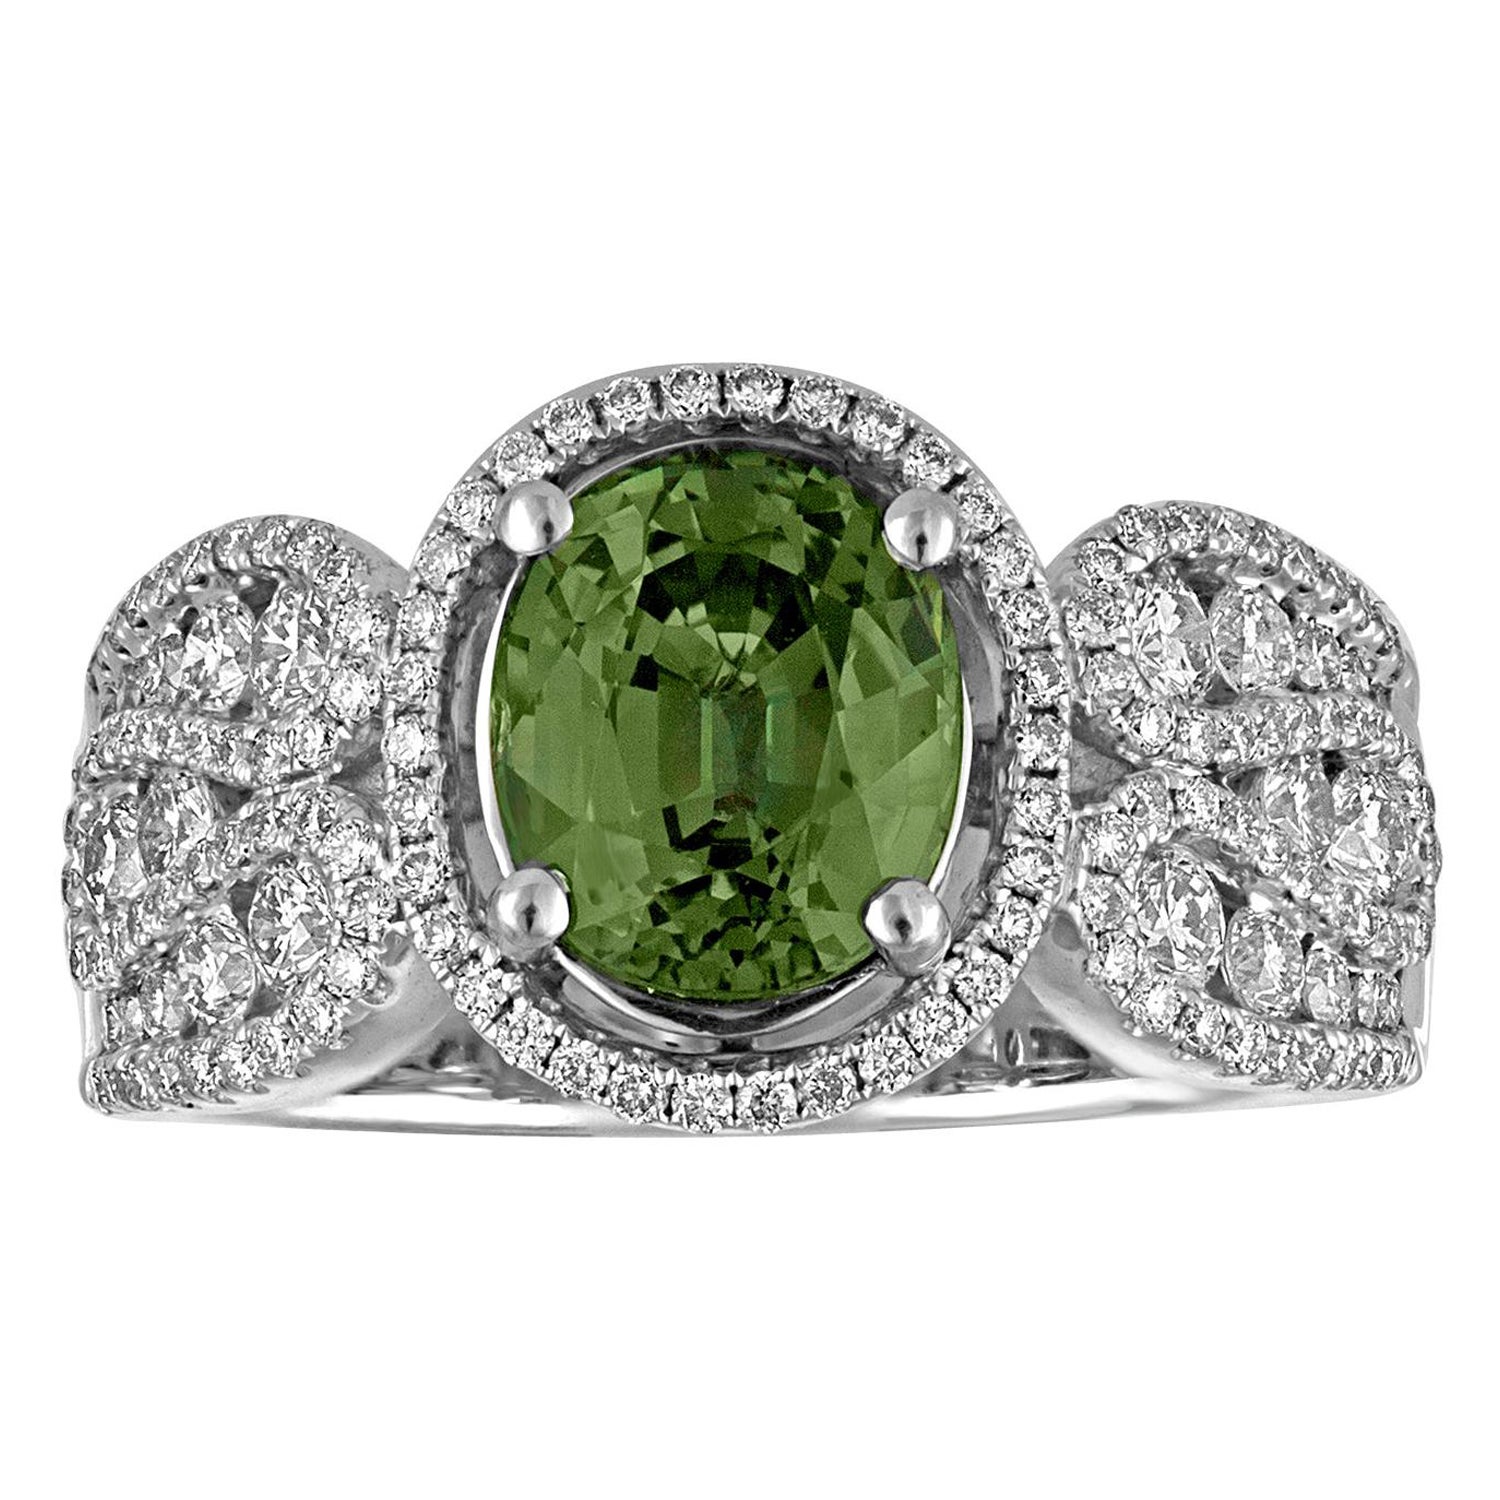 Bague en or avec saphir vert ovale certifié de 3,08 carats et diamants